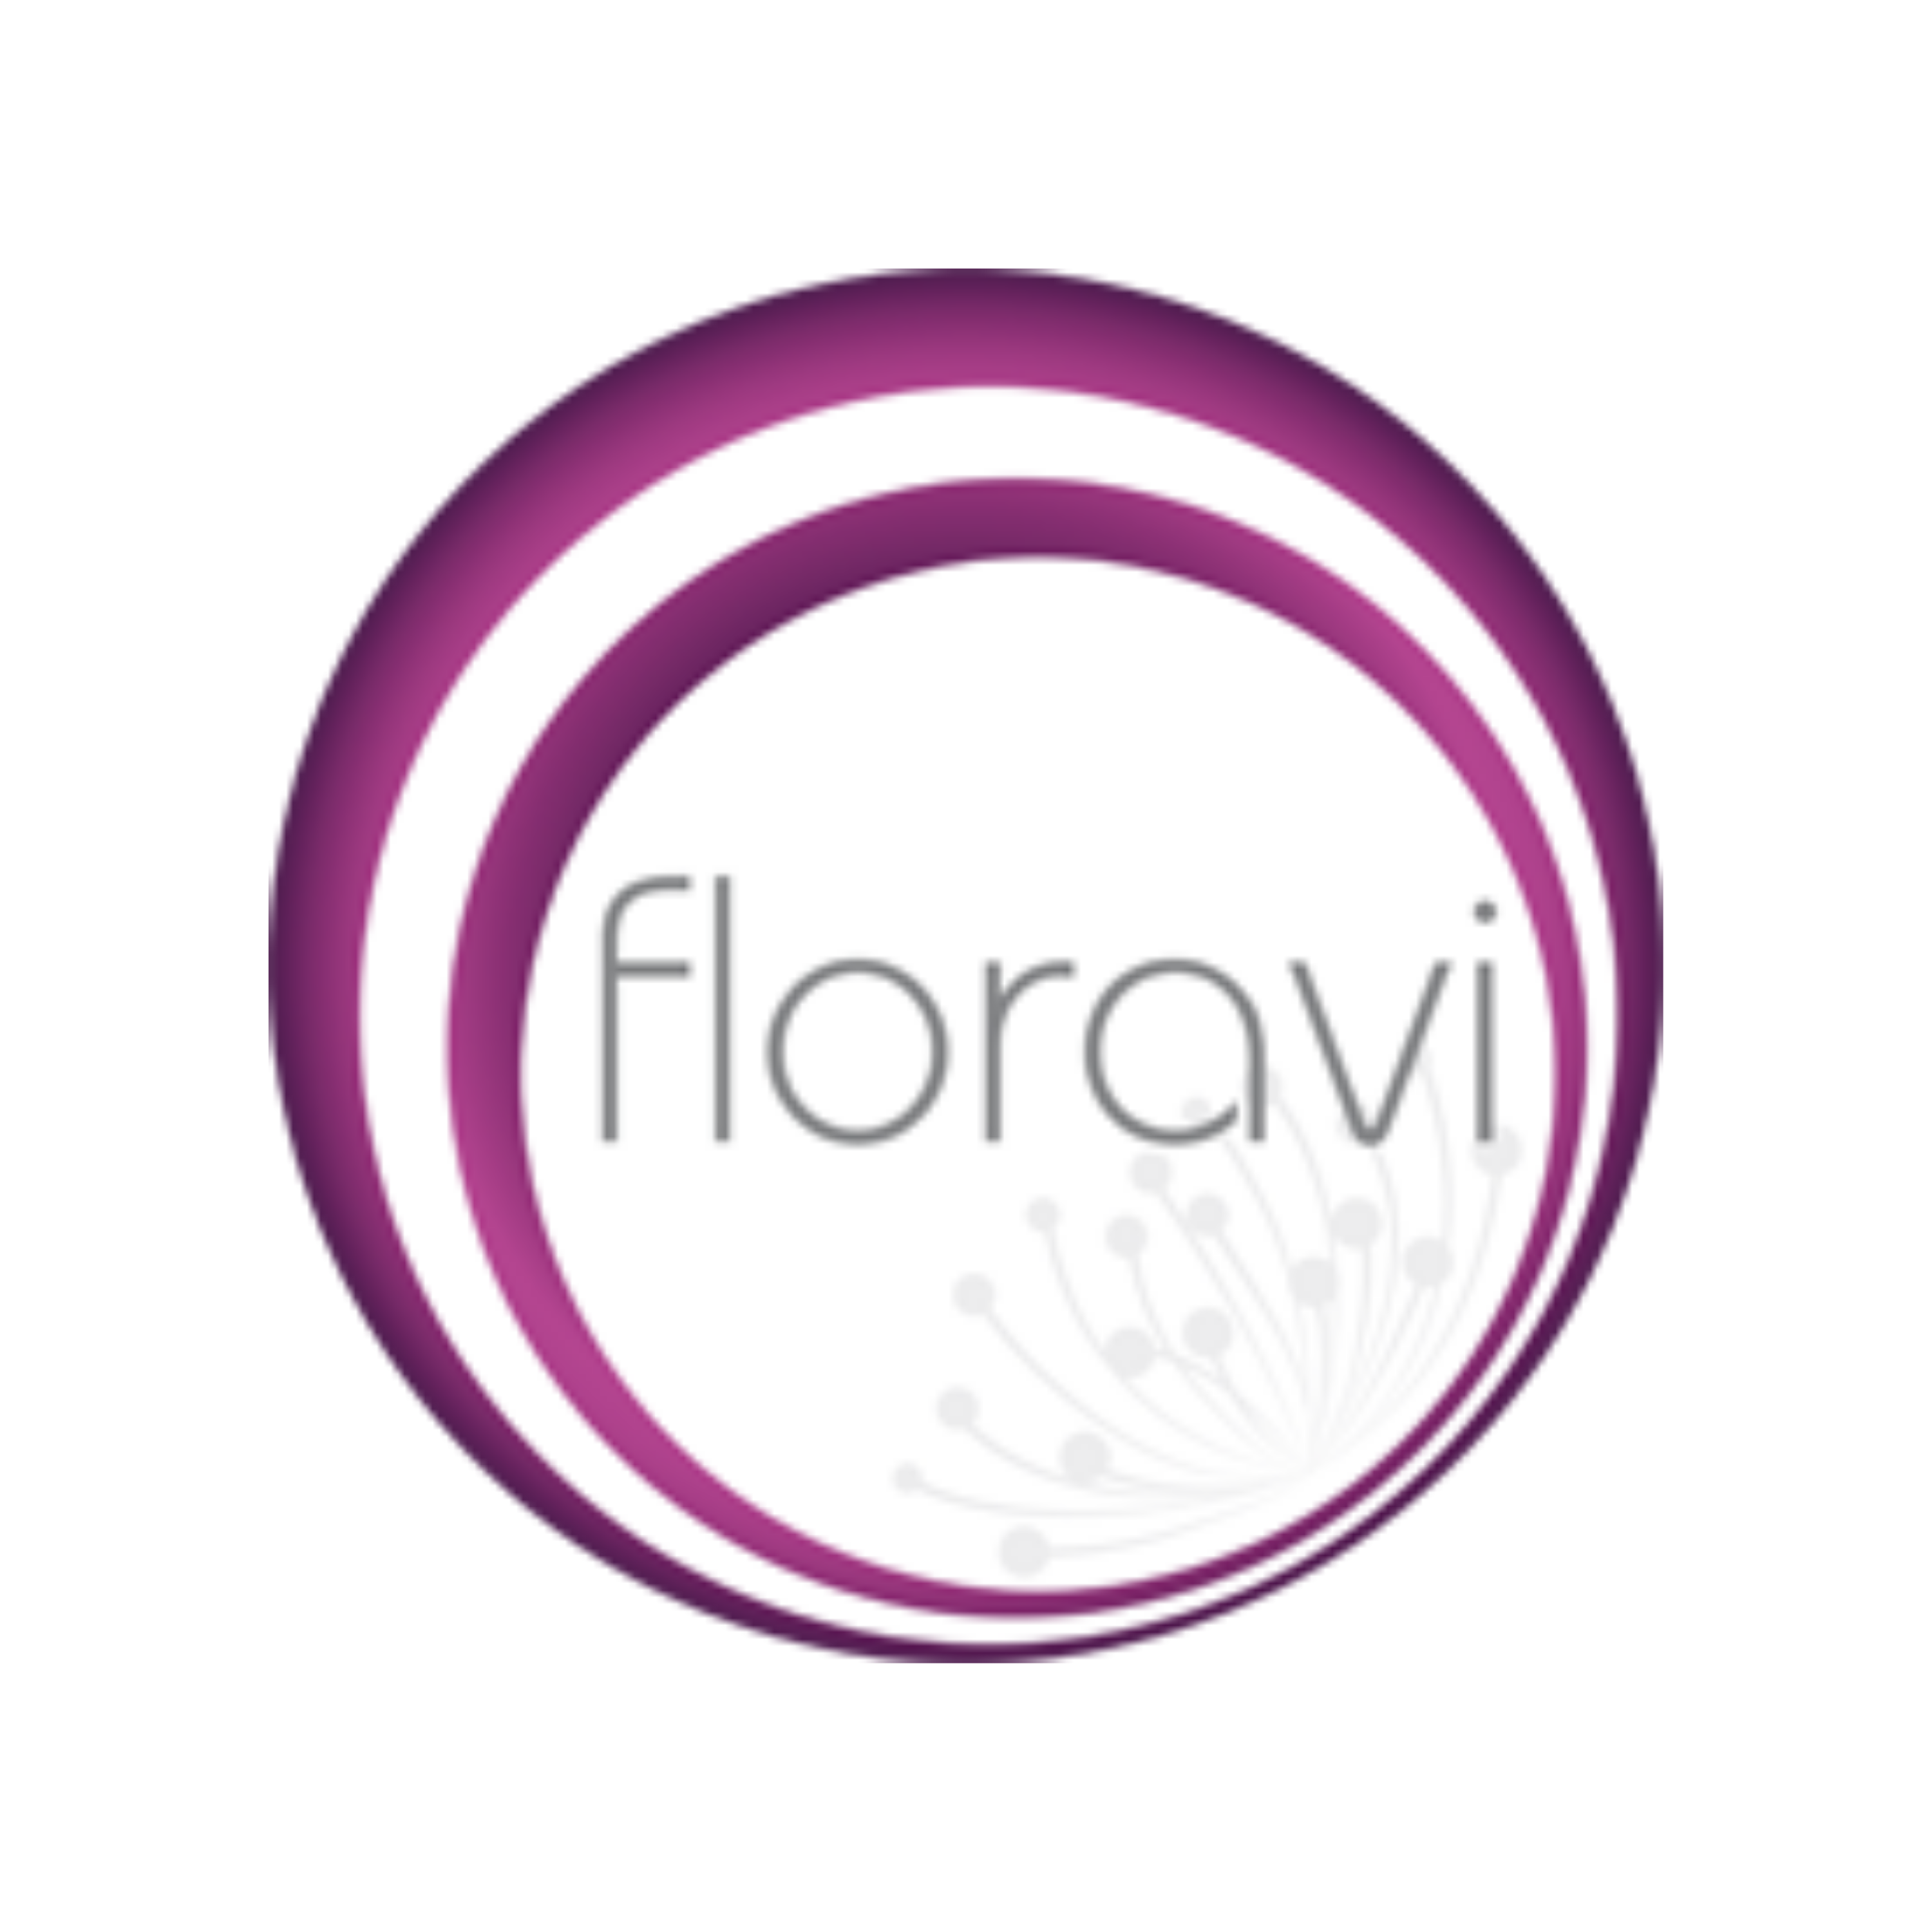 Floravi